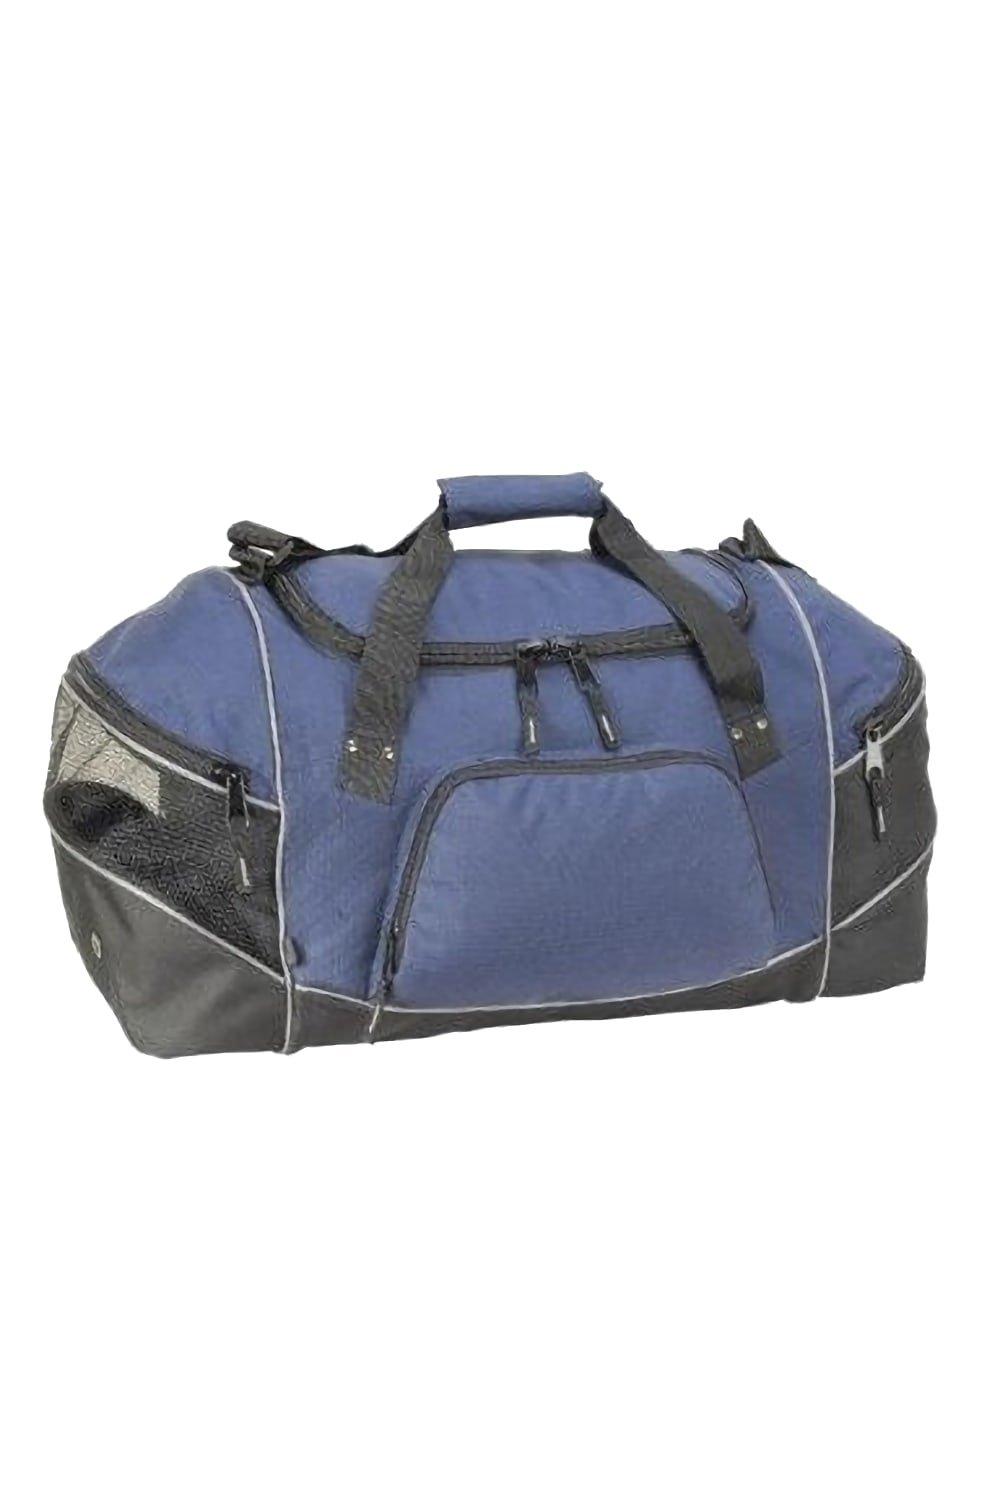 Универсальная спортивная сумка Daytona (50 литров) (2 шт.) Shugon, темно-синий